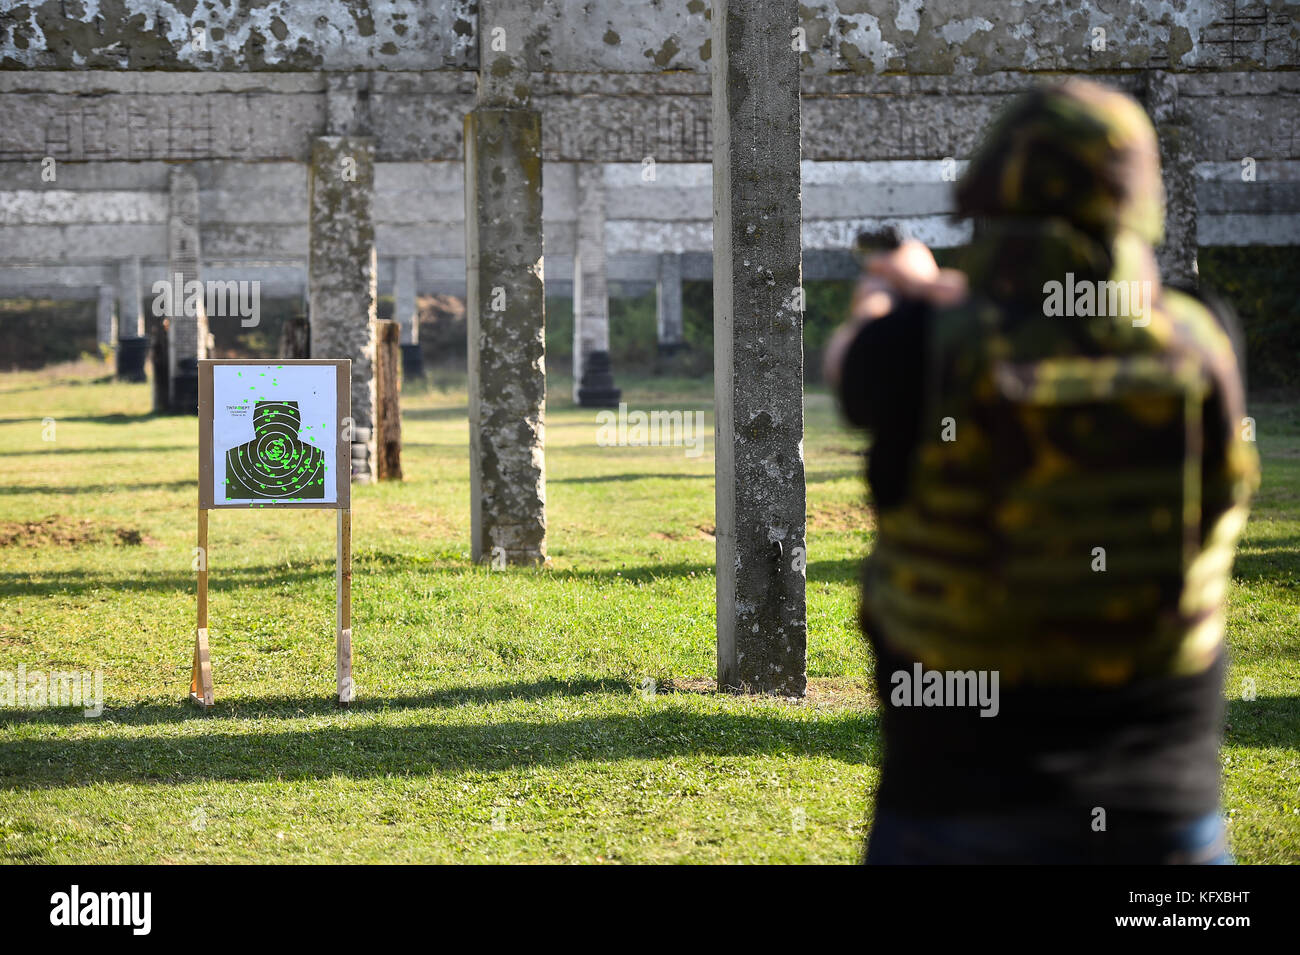 Prise de vue en extérieur avec un pistolet 9 mm dans un champ de tir Banque D'Images